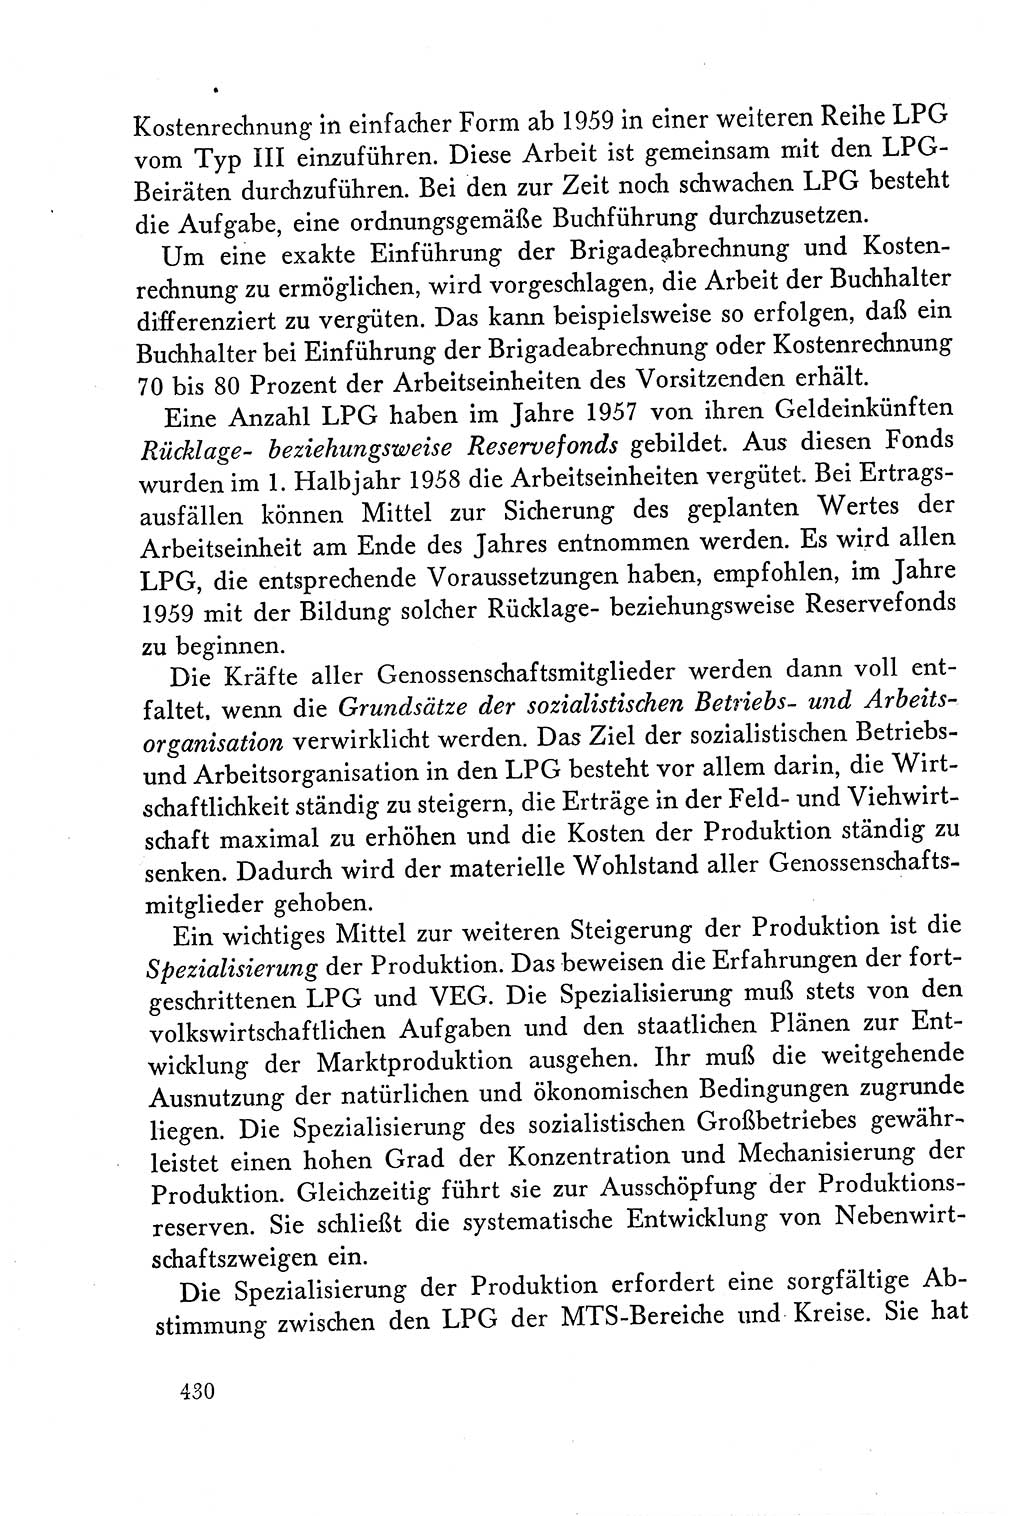 Dokumente der Sozialistischen Einheitspartei Deutschlands (SED) [Deutsche Demokratische Republik (DDR)] 1958-1959, Seite 430 (Dok. SED DDR 1958-1959, S. 430)